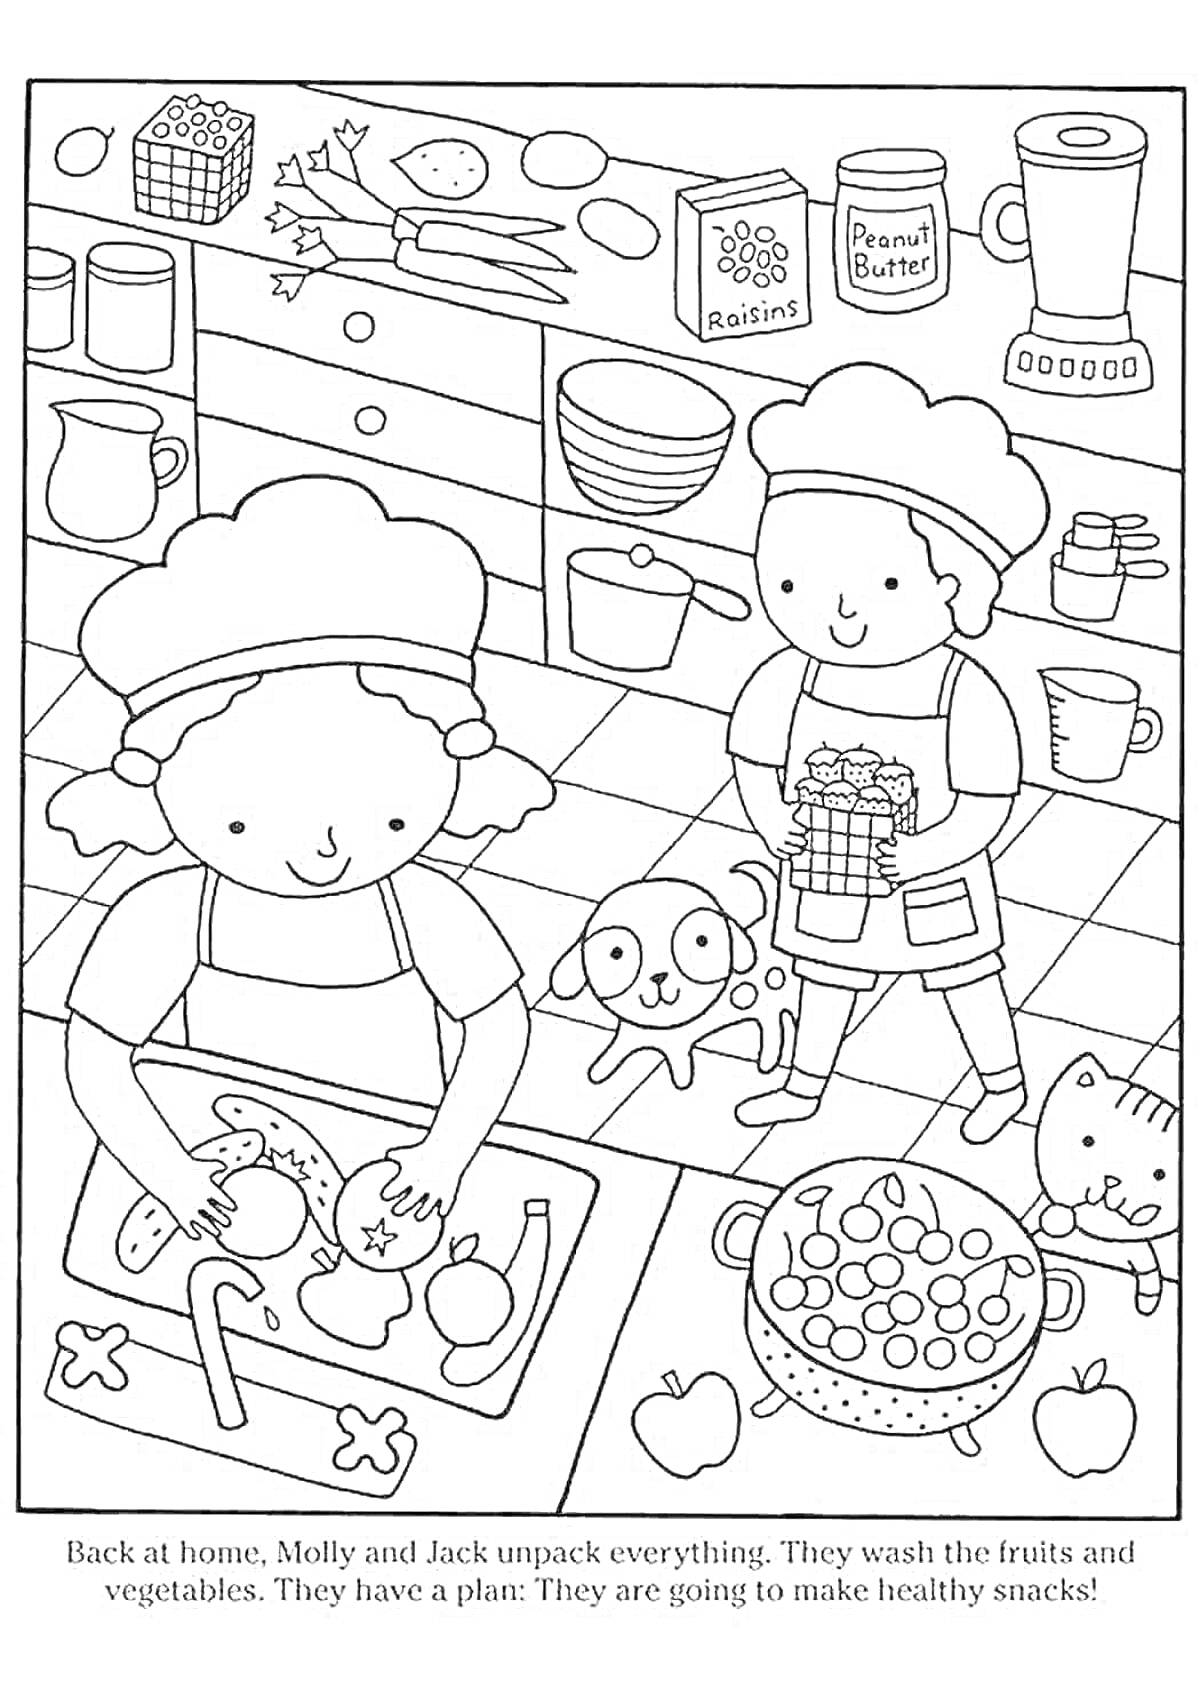 Раскраска Дети готовят здоровые закуски, девочка чистит овощи, мальчик держит овощи, рядом собака, на плите кастрюля с овощами, шкафчик, стол, кухонные предметы, банки с изюмом и арахисовым маслом